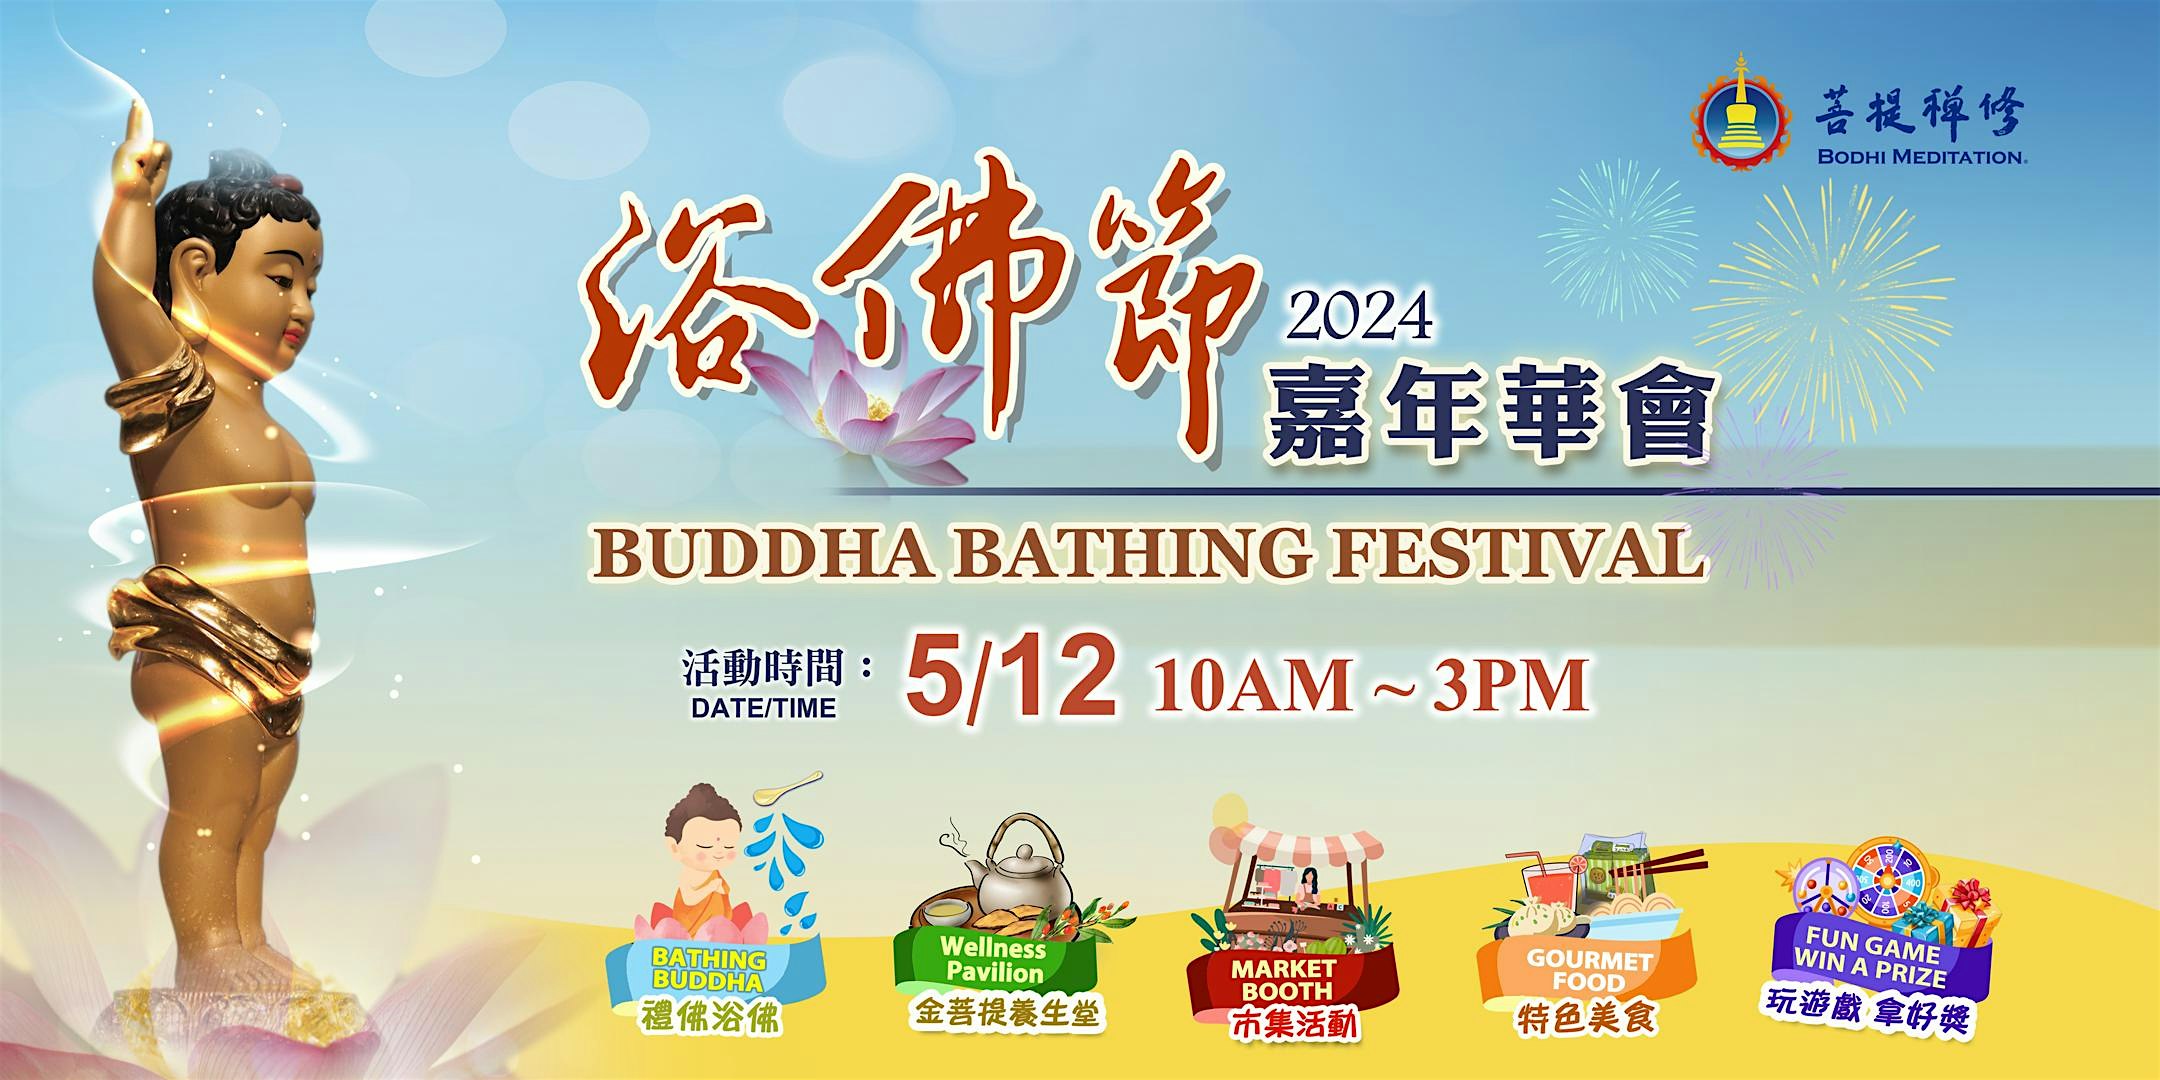 Bathing Buddha Festival